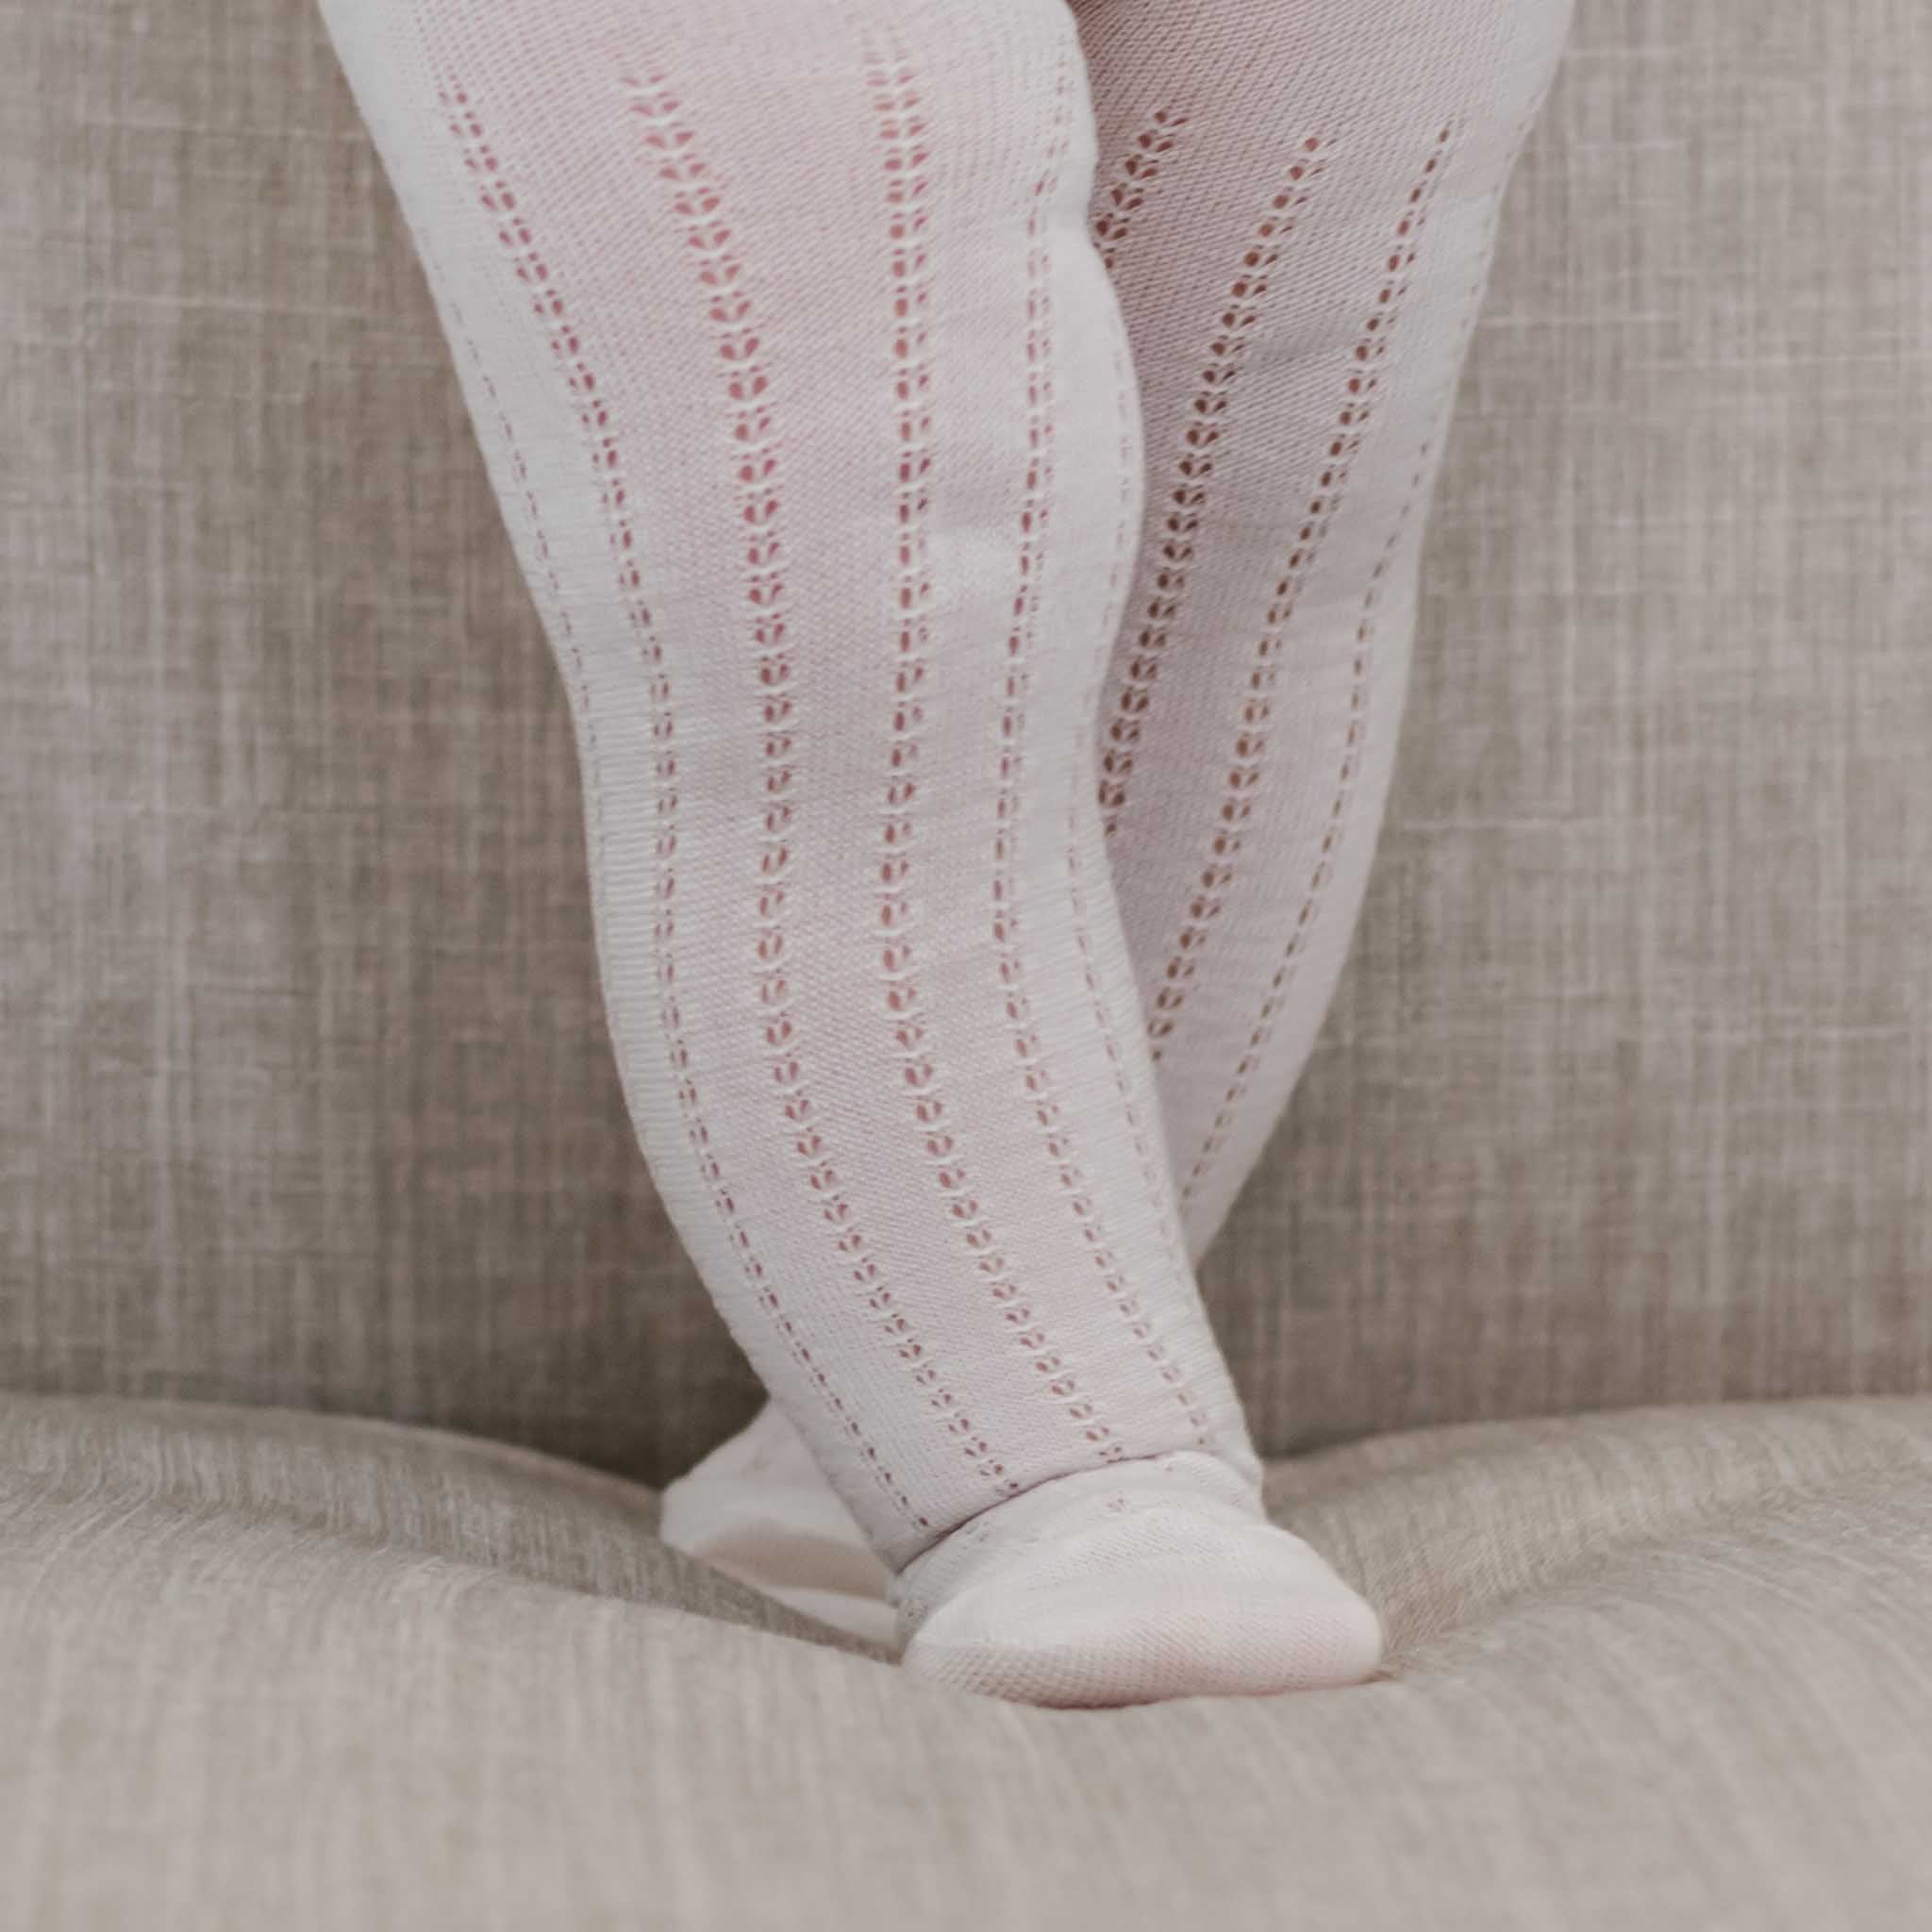 Cute 'N' Fancy Corgi Leggings – Brave New Look